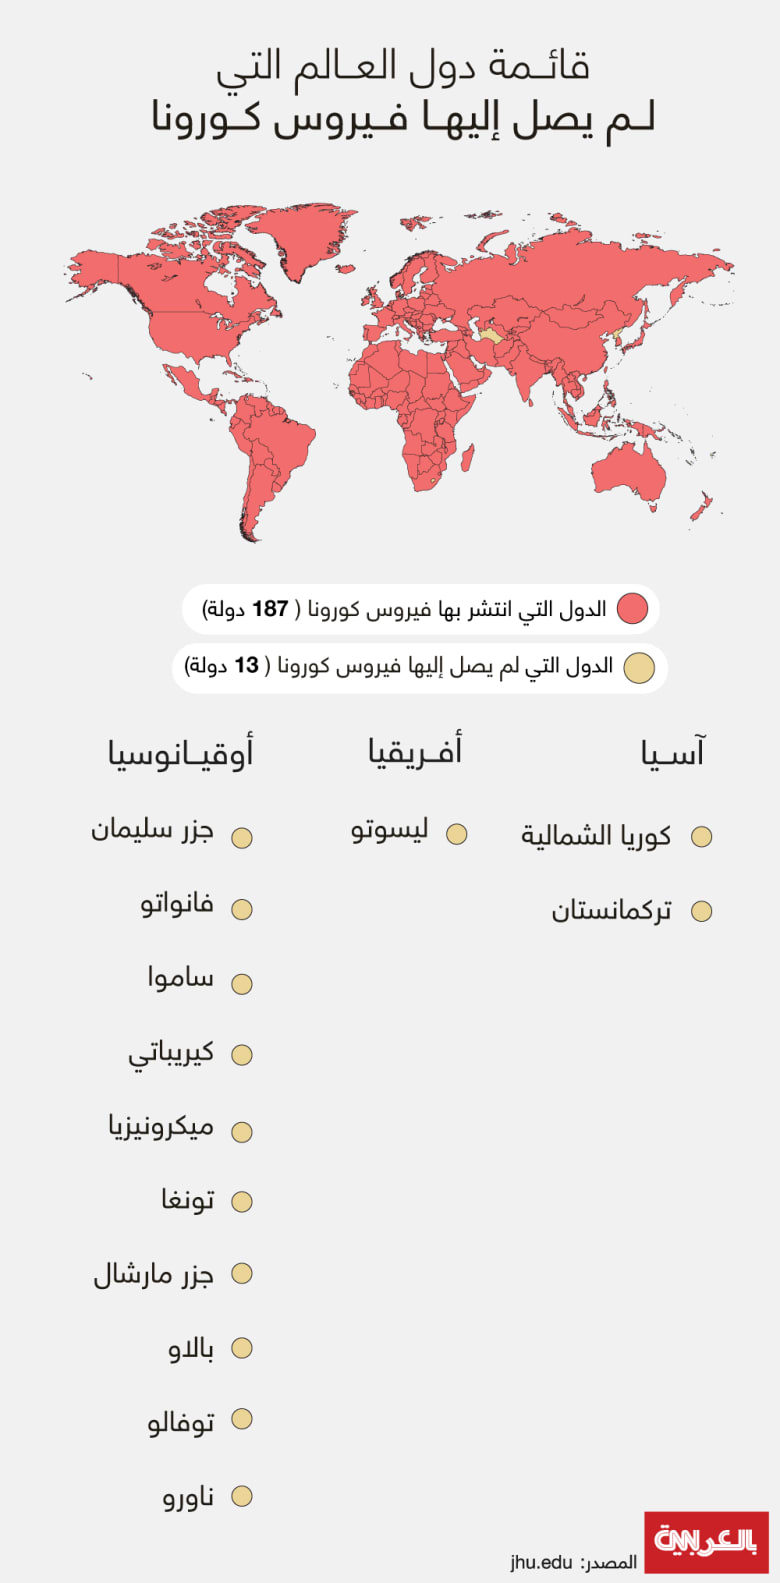 ما هي الدول التي لم يصل إليها فيروس كورونا حتى اليوم؟ - CNN Arabic